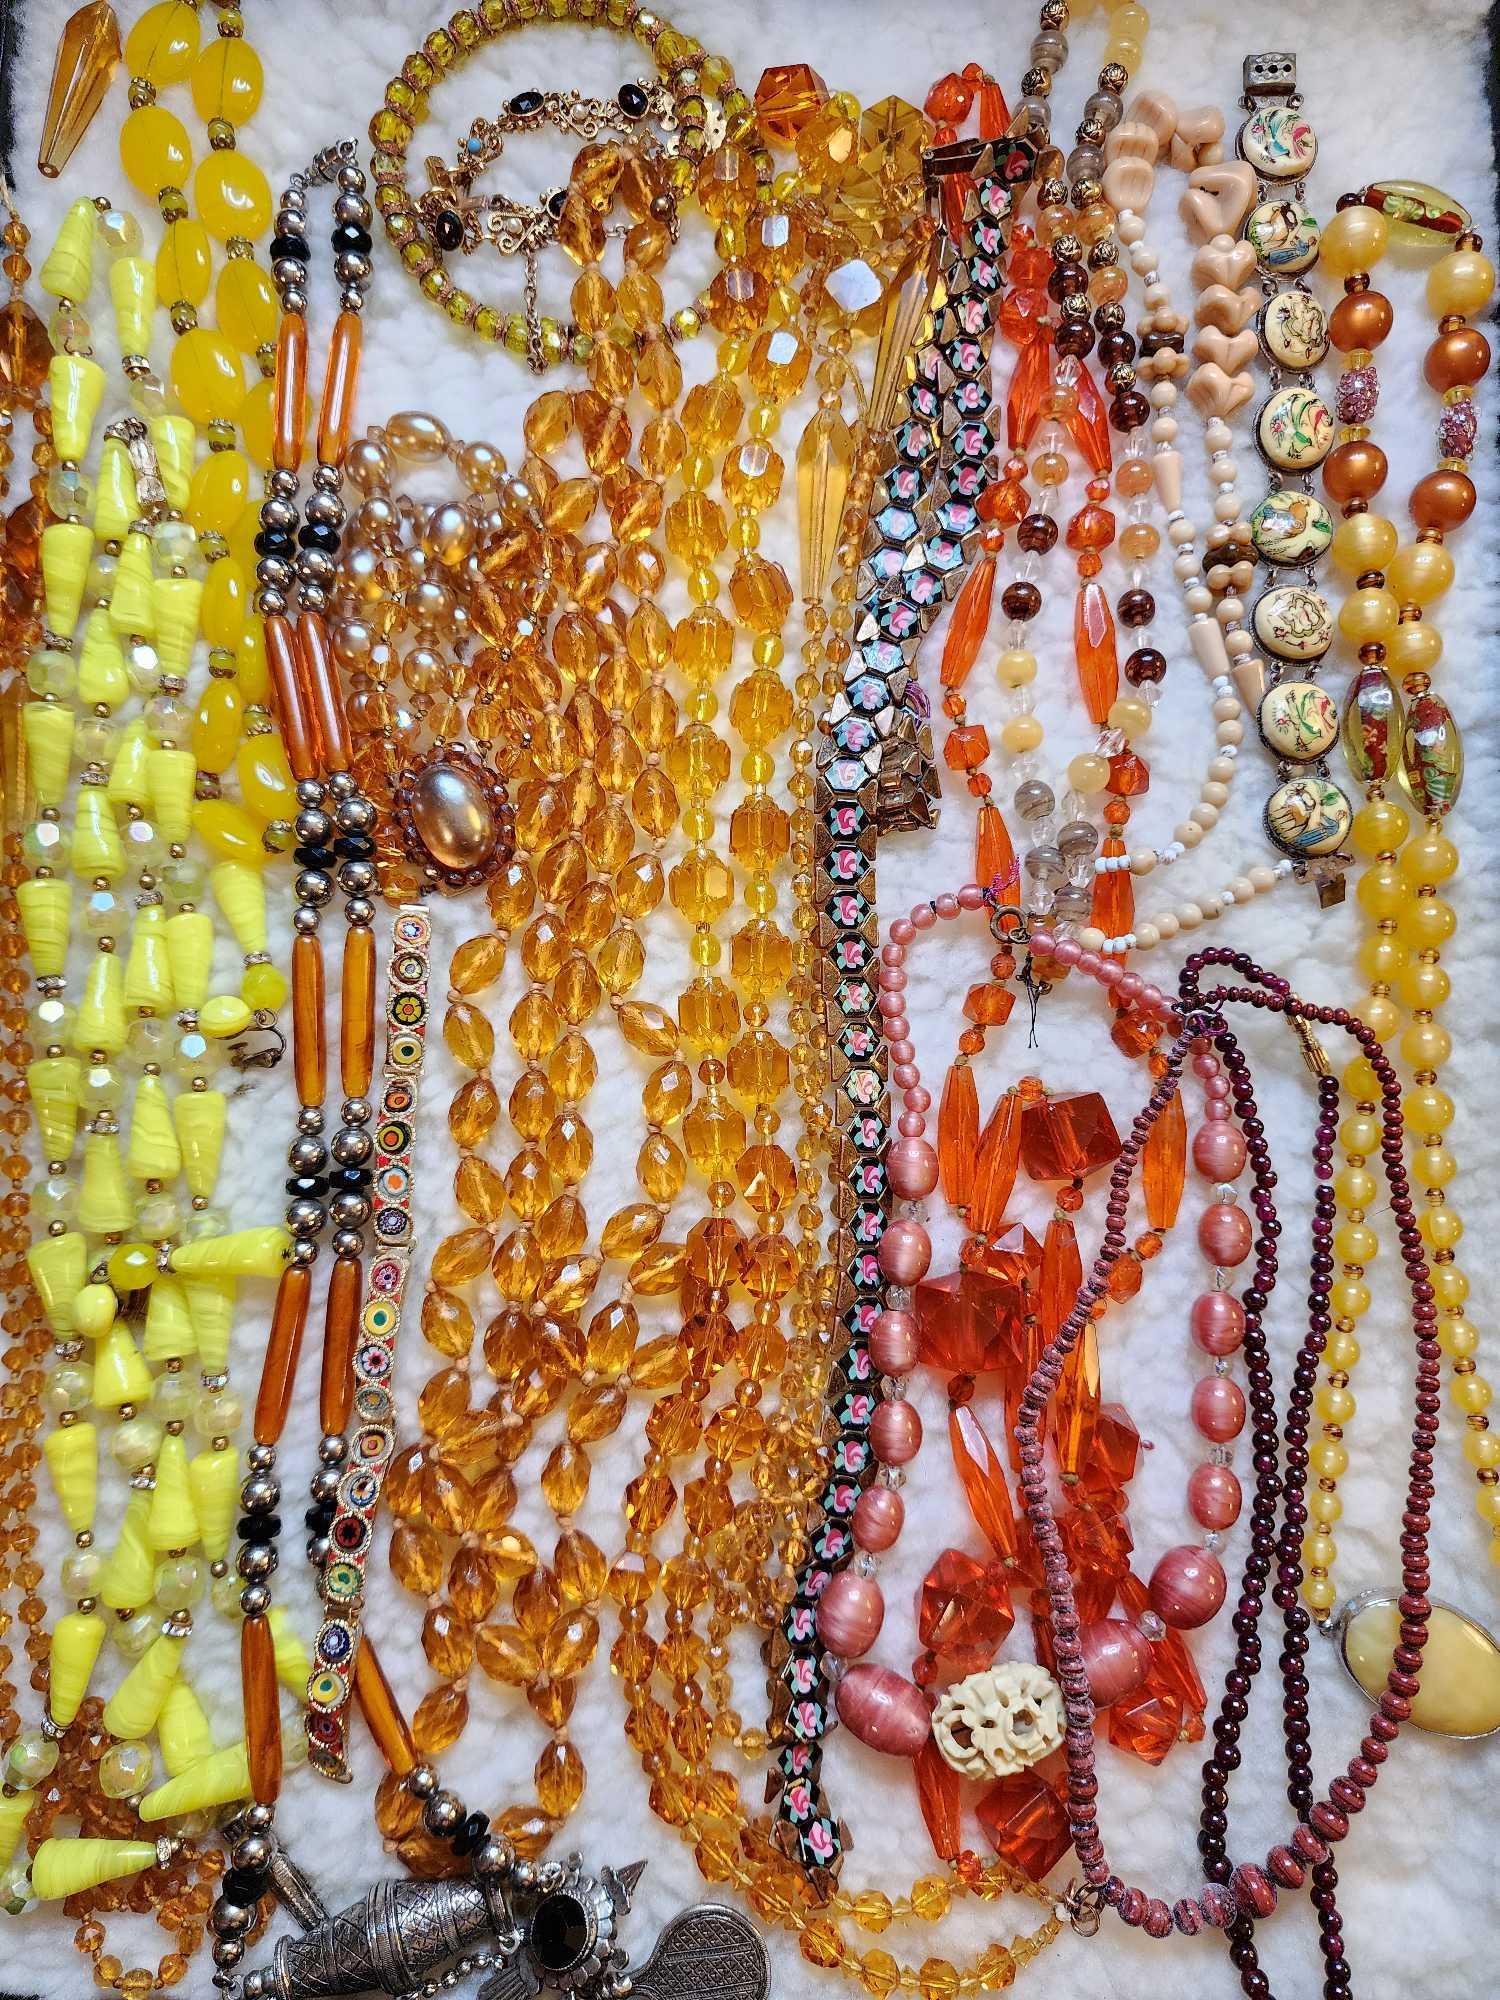 Jewerly Glass Beads